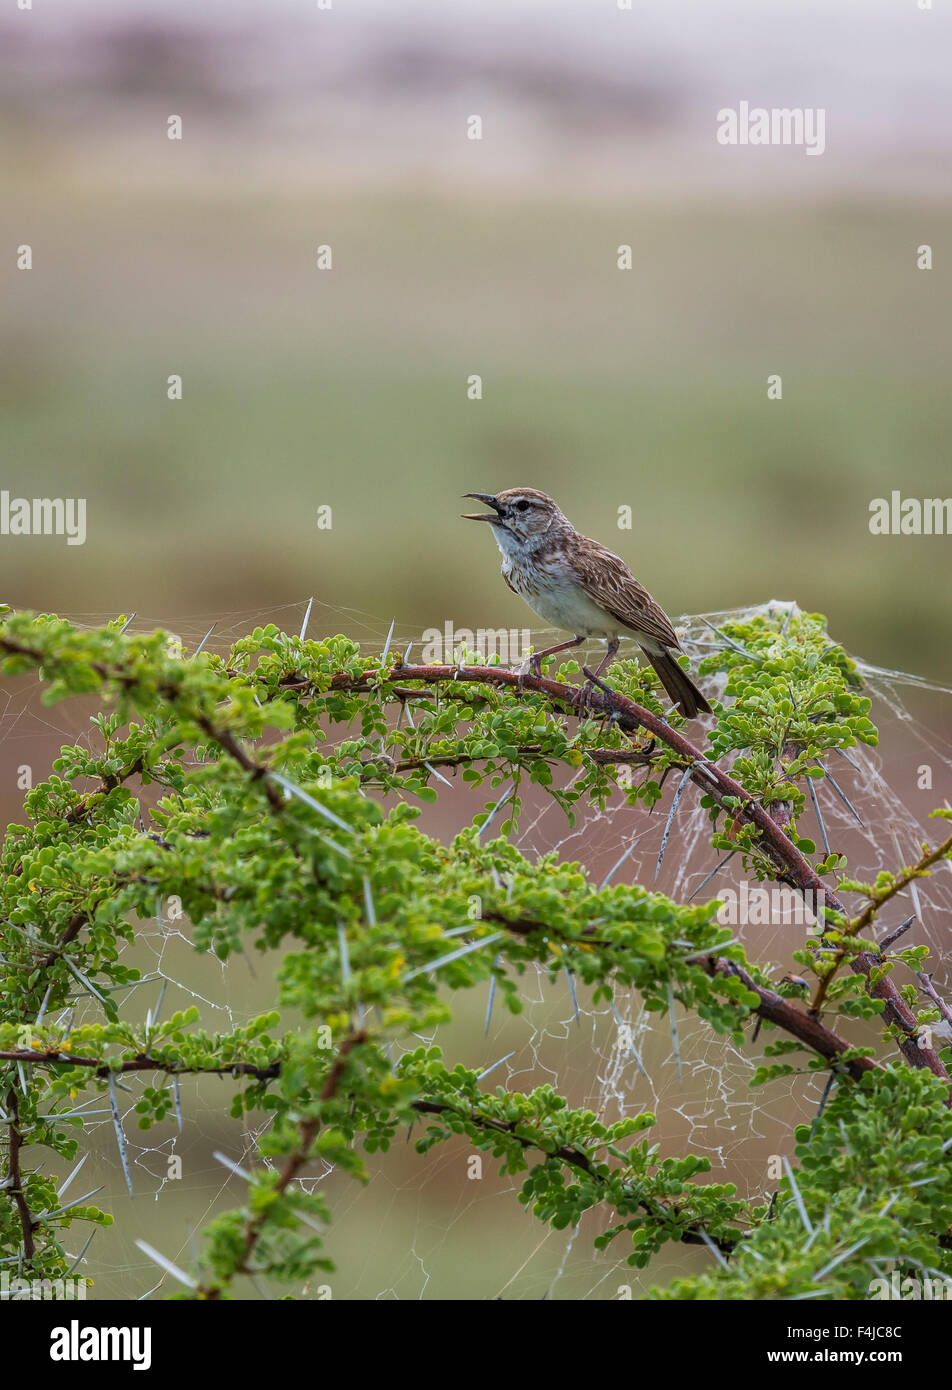 Manakin bird singing perché sur branche d'arbre. Parc National d'Etosha, Namibie, Afrique Banque D'Images